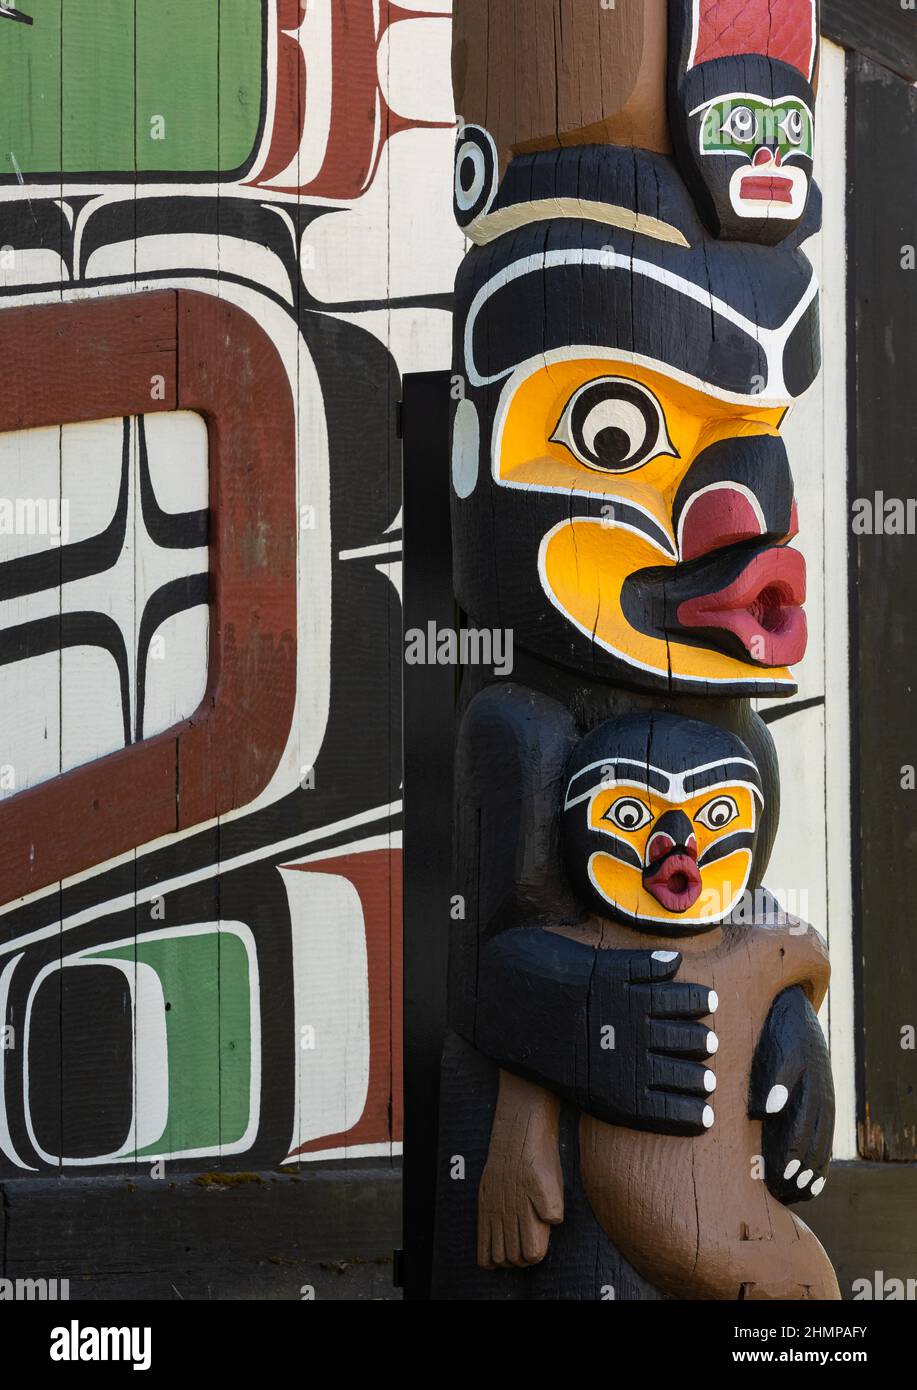 Poteau en bois totem coloré. Un totem des Premières nations accueille des voyageurs à Victoria, en Colombie-Britannique, au Canada Banque D'Images